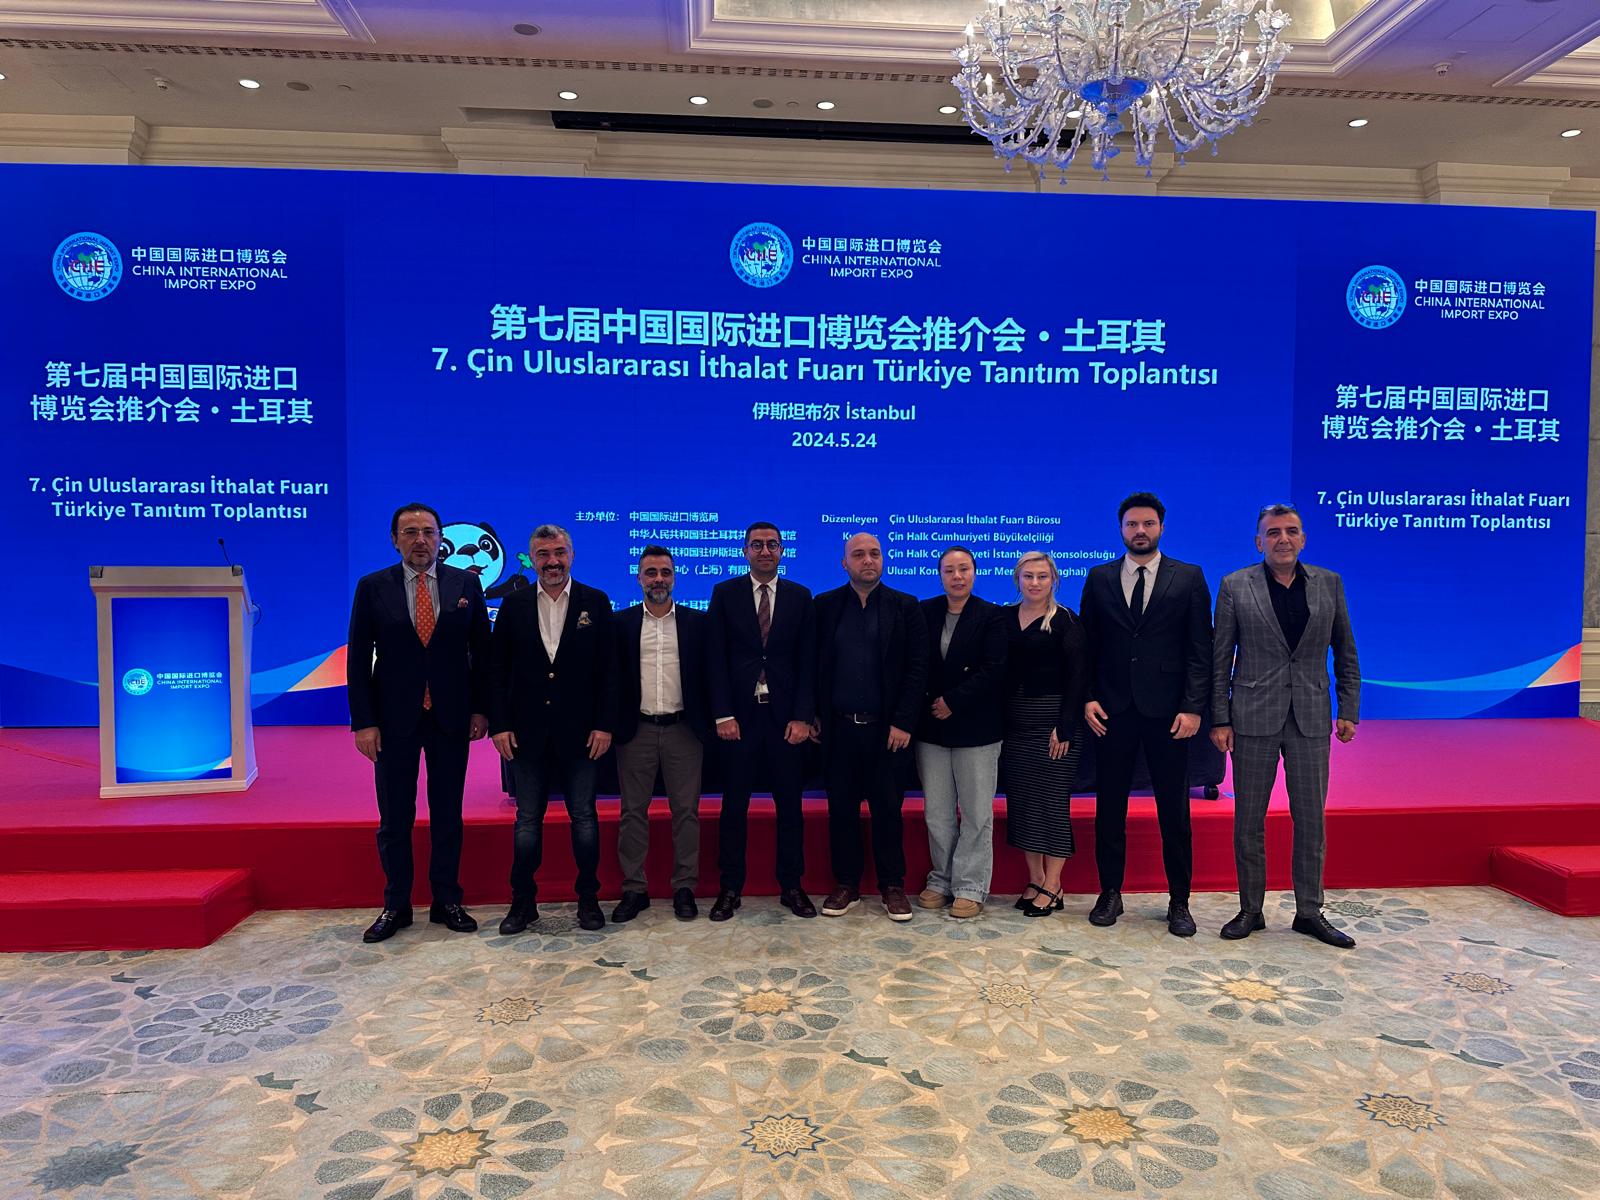 7. Çin Uluslararası İthalat Fuarının (CIIE) Türkiye Tanıtım Toplantısına katıldık.